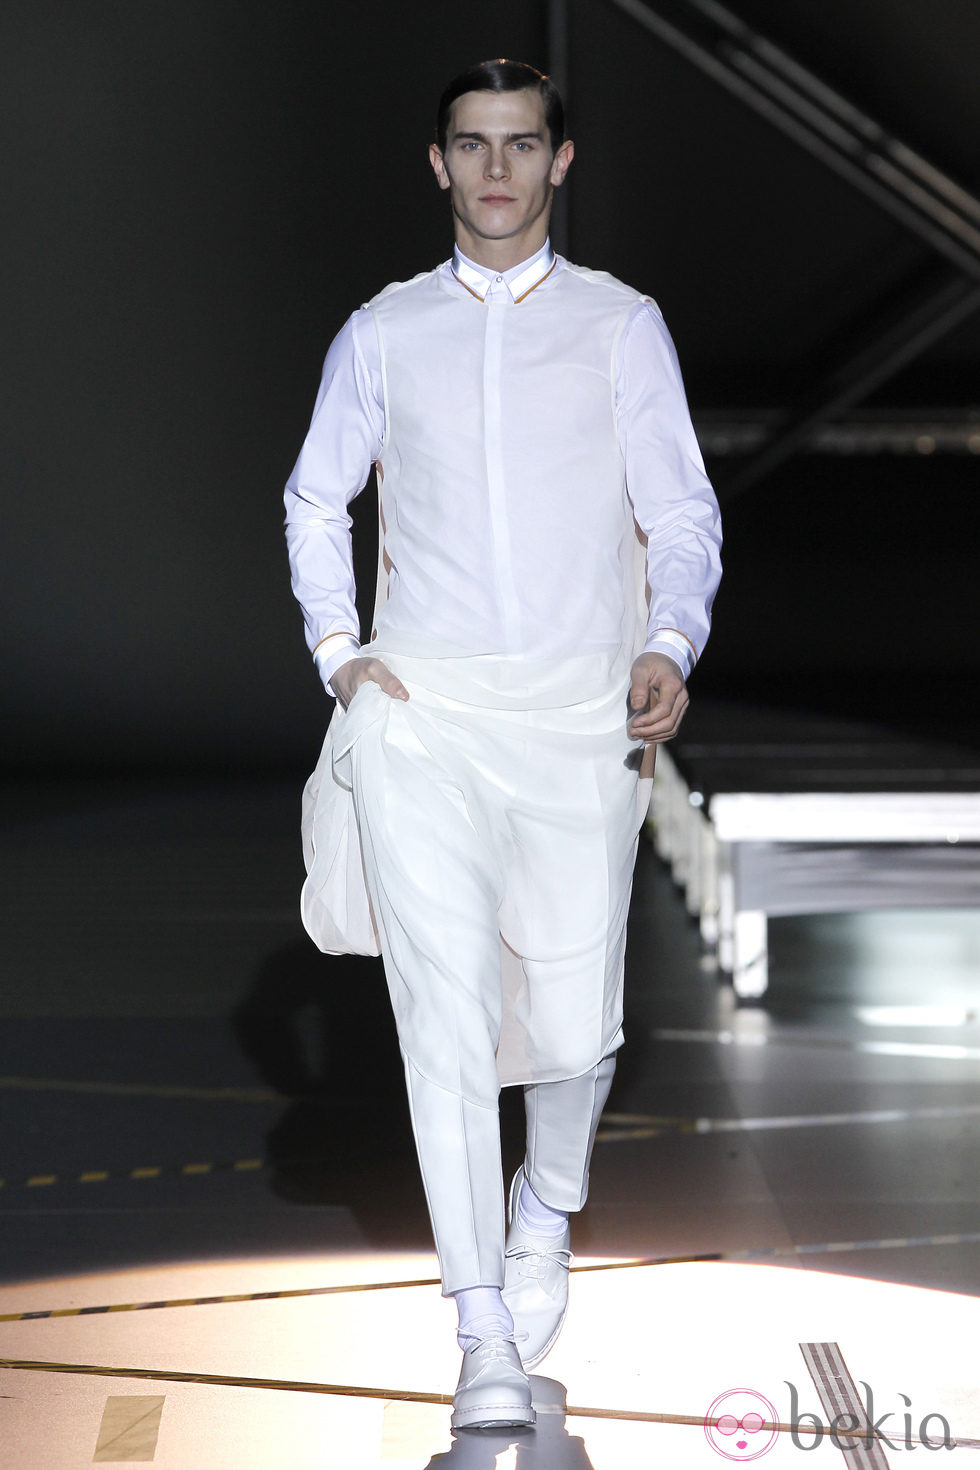 Look blanco total para hombre de la colección otoño/invierno 2012/2013 de Davidelfin